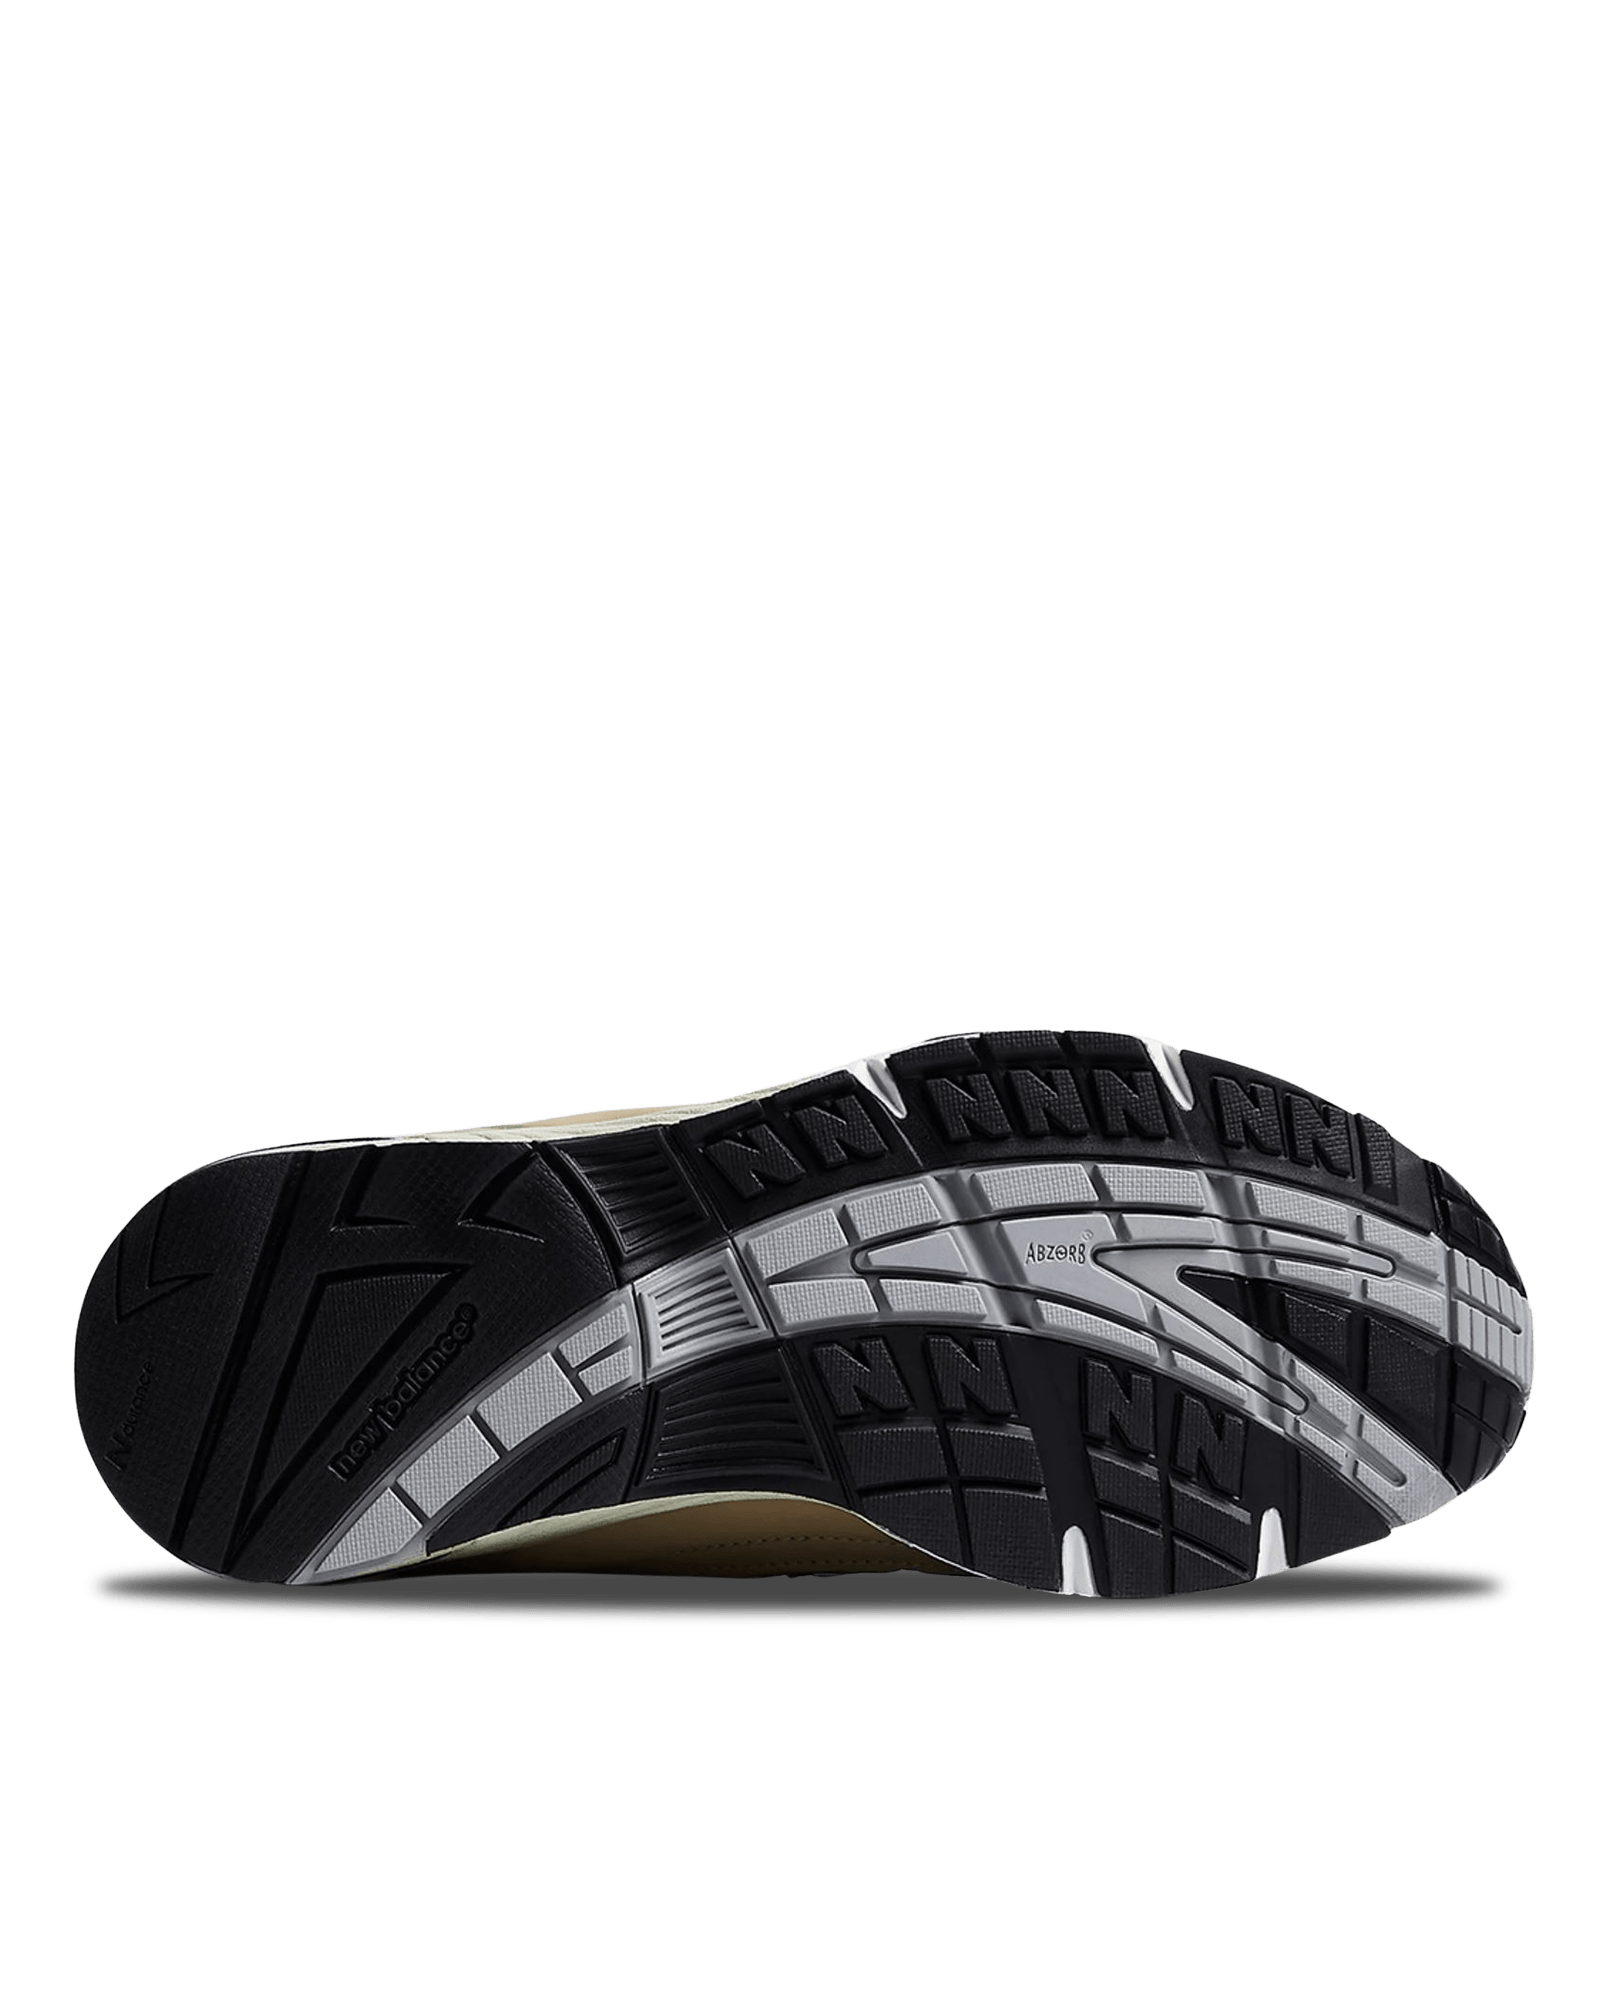 M991BTN $164 New Balance Footwear Sneakers Beige